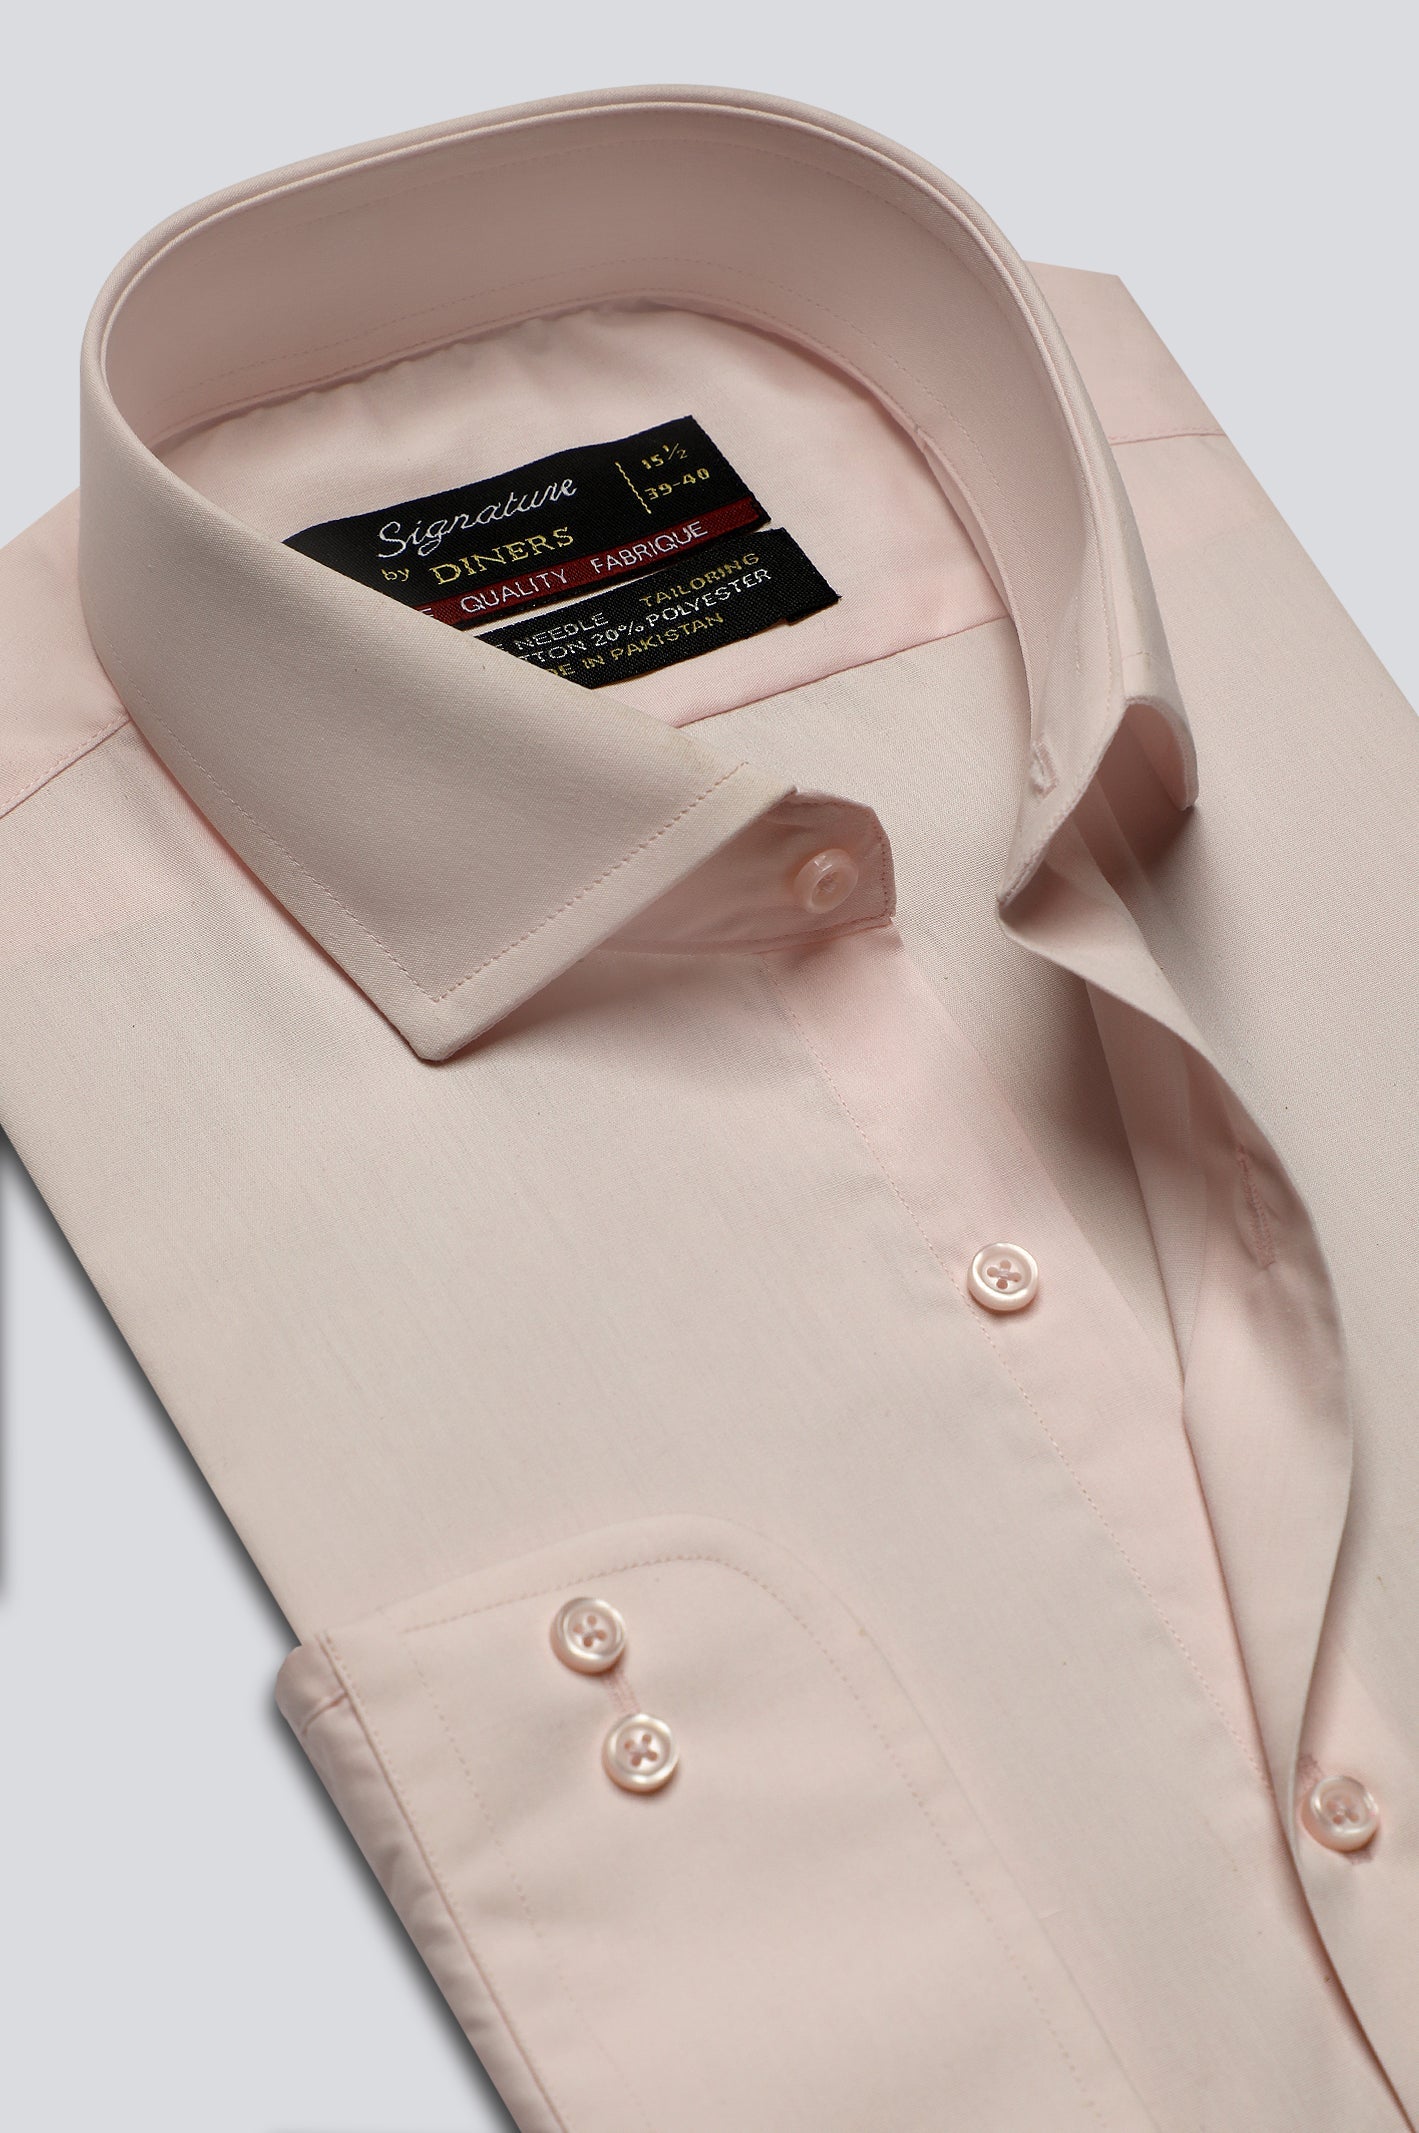 Light Pink Plain Formal Shirt For Men - Diners